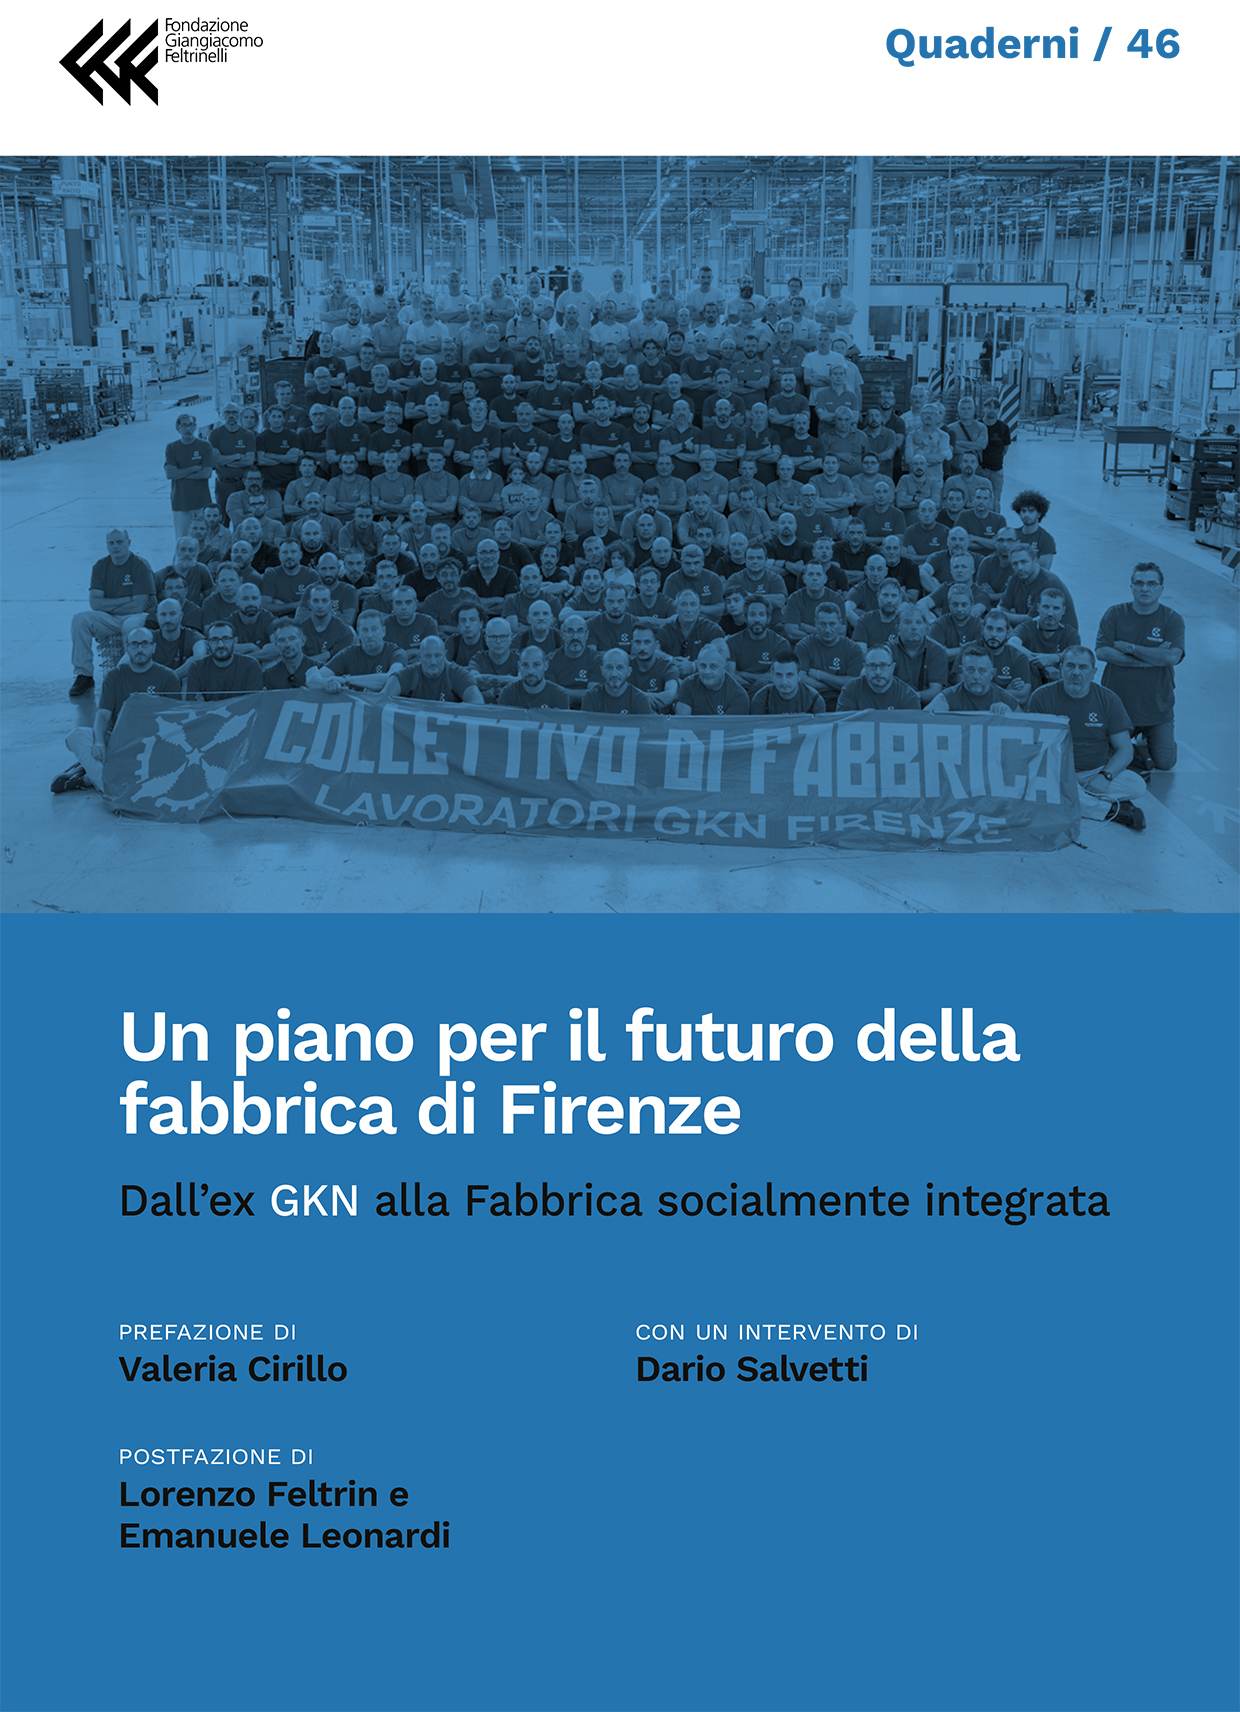 Un piano per il futuro della fabbrica di Firenze
Dall’ex GKN alla Fabbrica socialmente integrata
